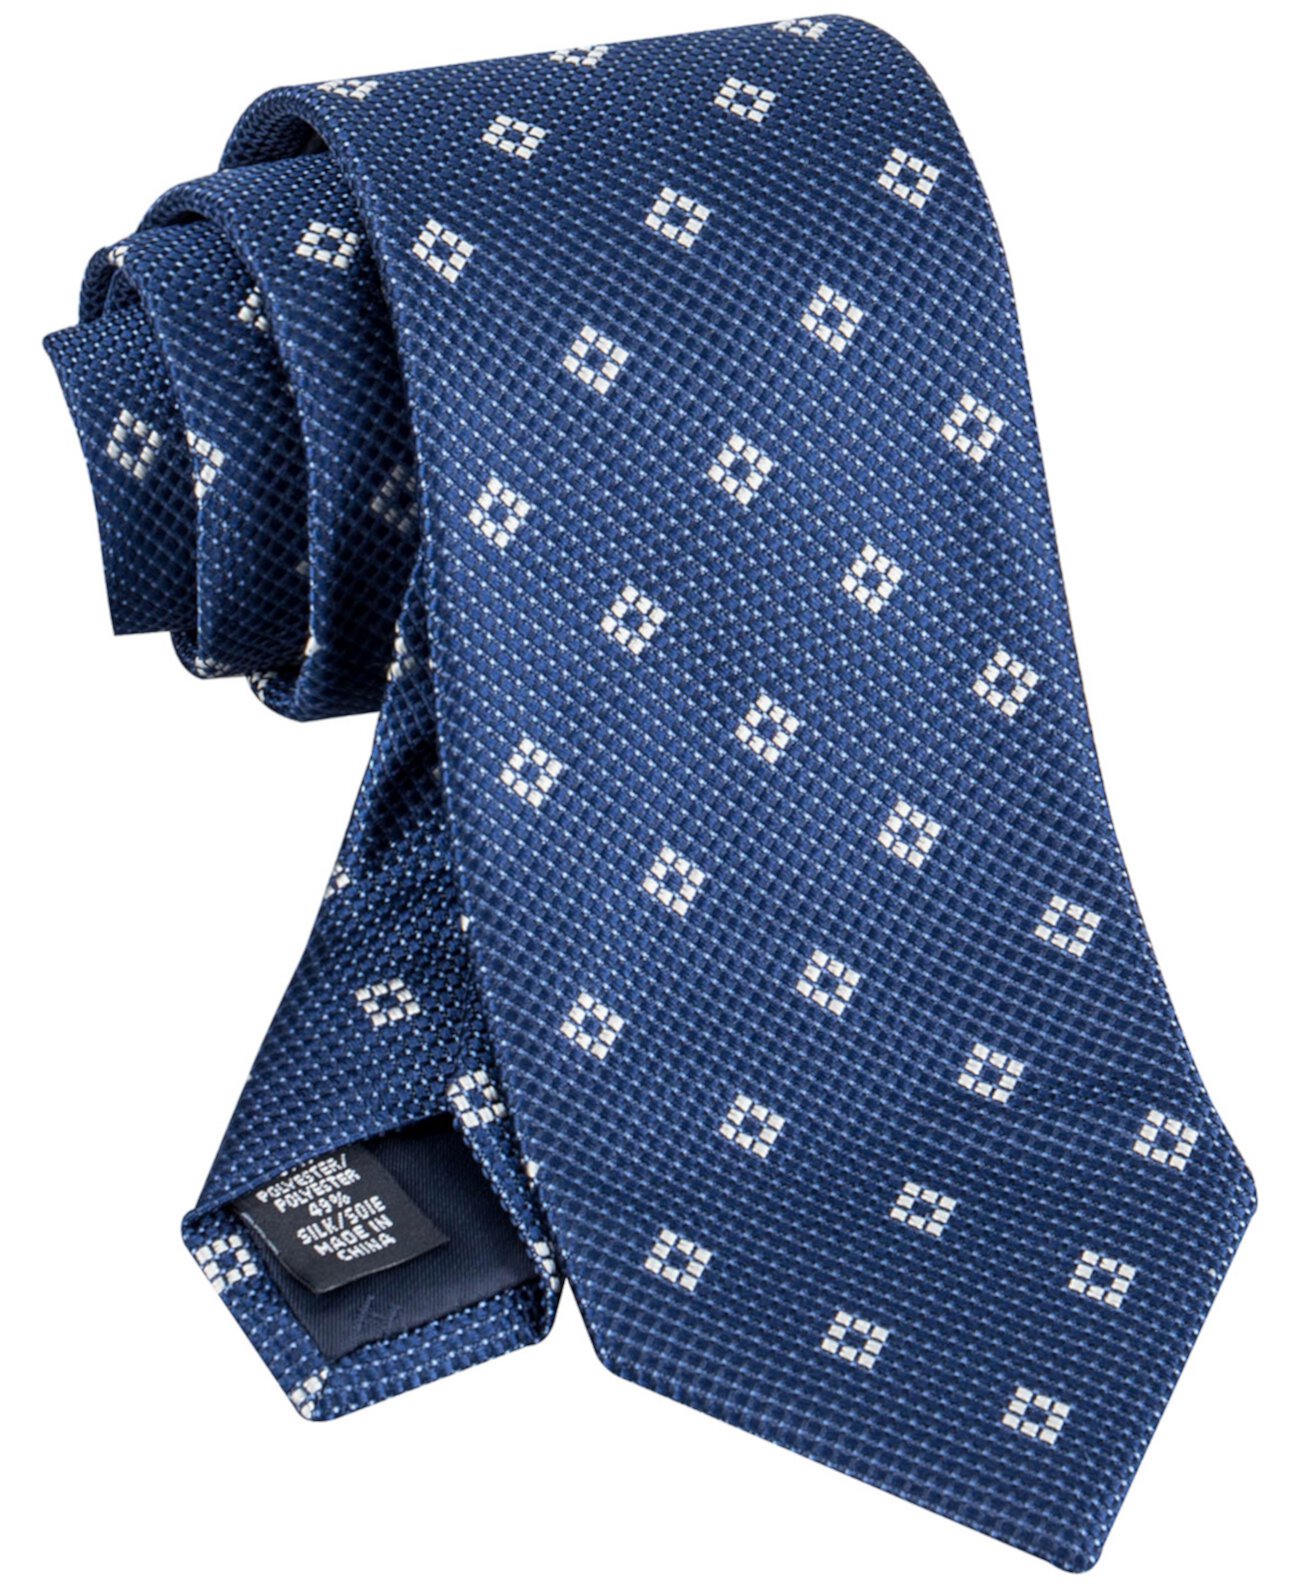 Мужской современный галстук с медальоном Tommy Hilfiger